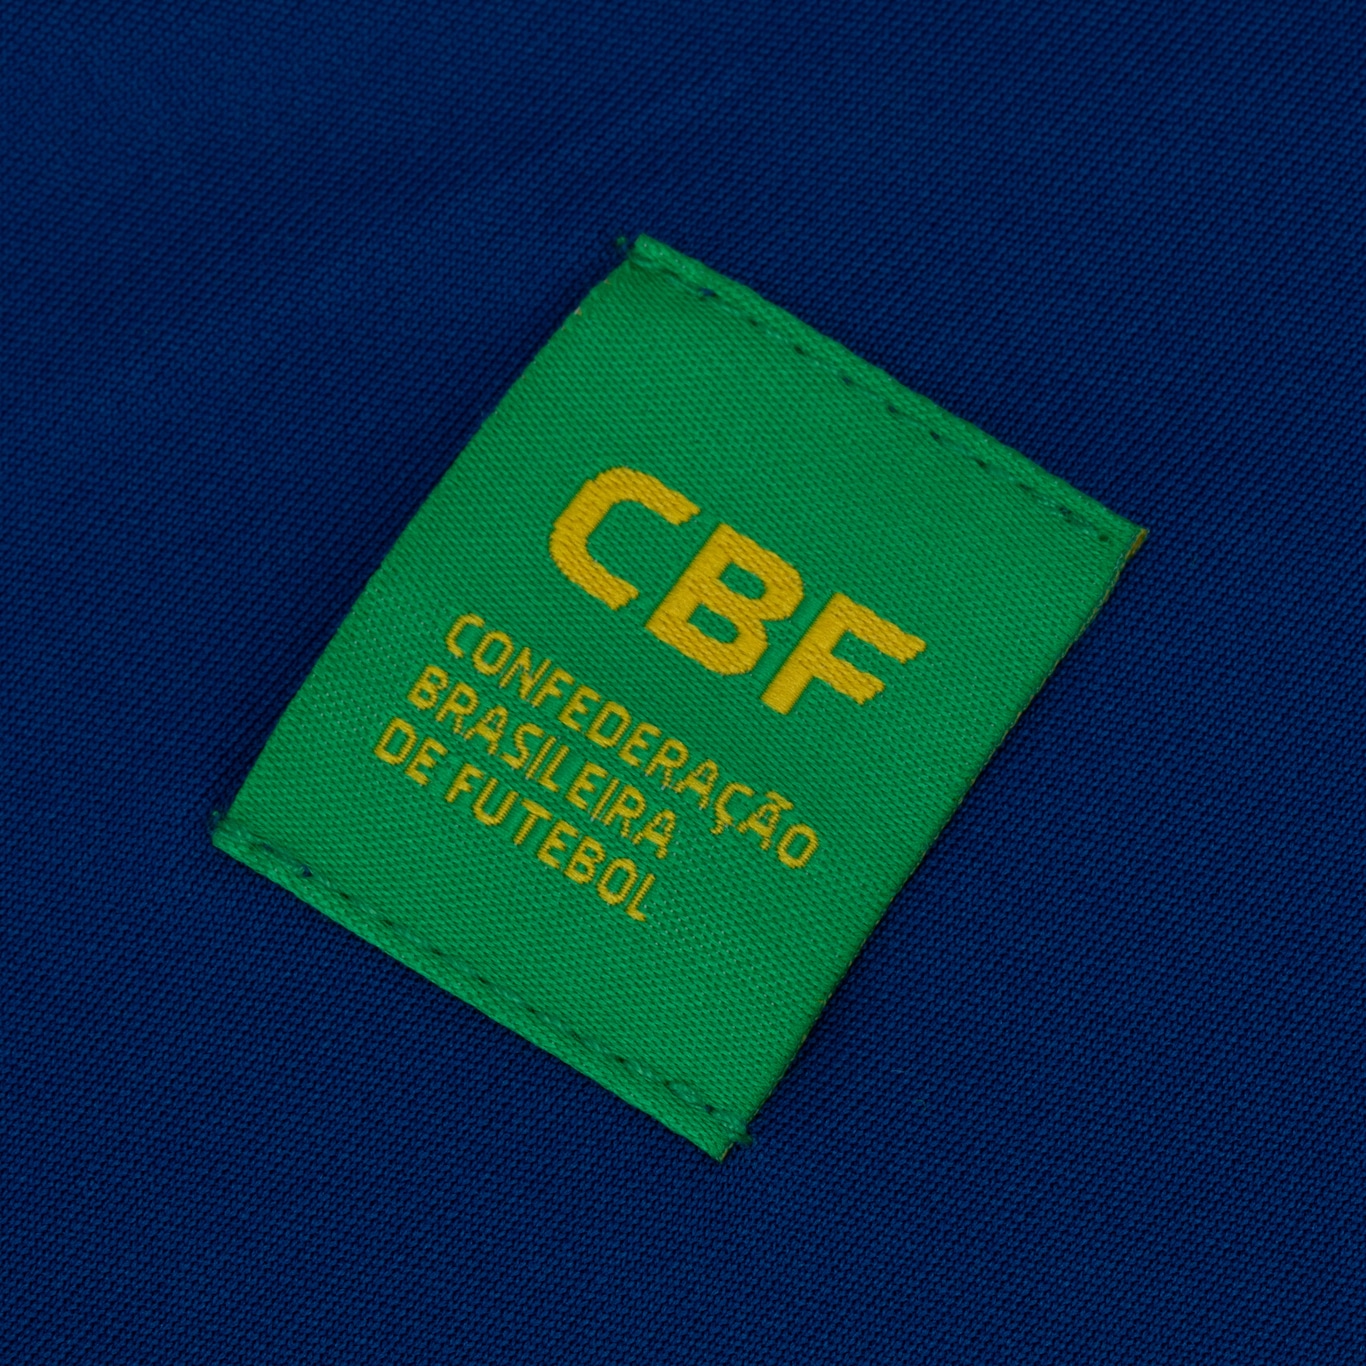 Camiseta Coleção Torcedor Brasileiro-CM20BZ, t-shirt roblox brasil